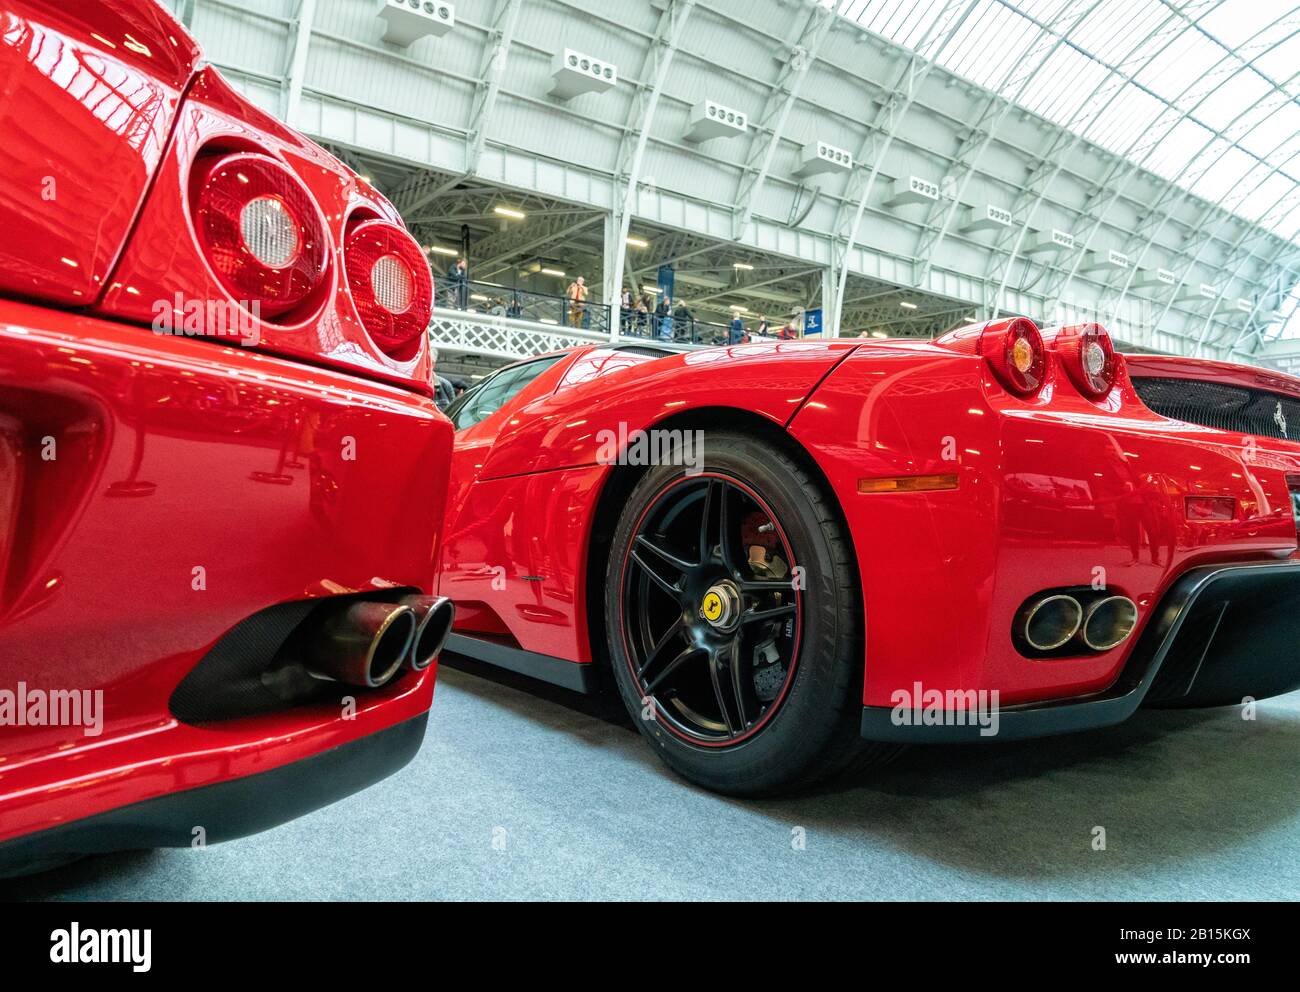 Februar 2020 - London, Großbritannien. Rote Ferrari-Modelle, die in der Classic Car Show angezeigt werden. Stockfoto